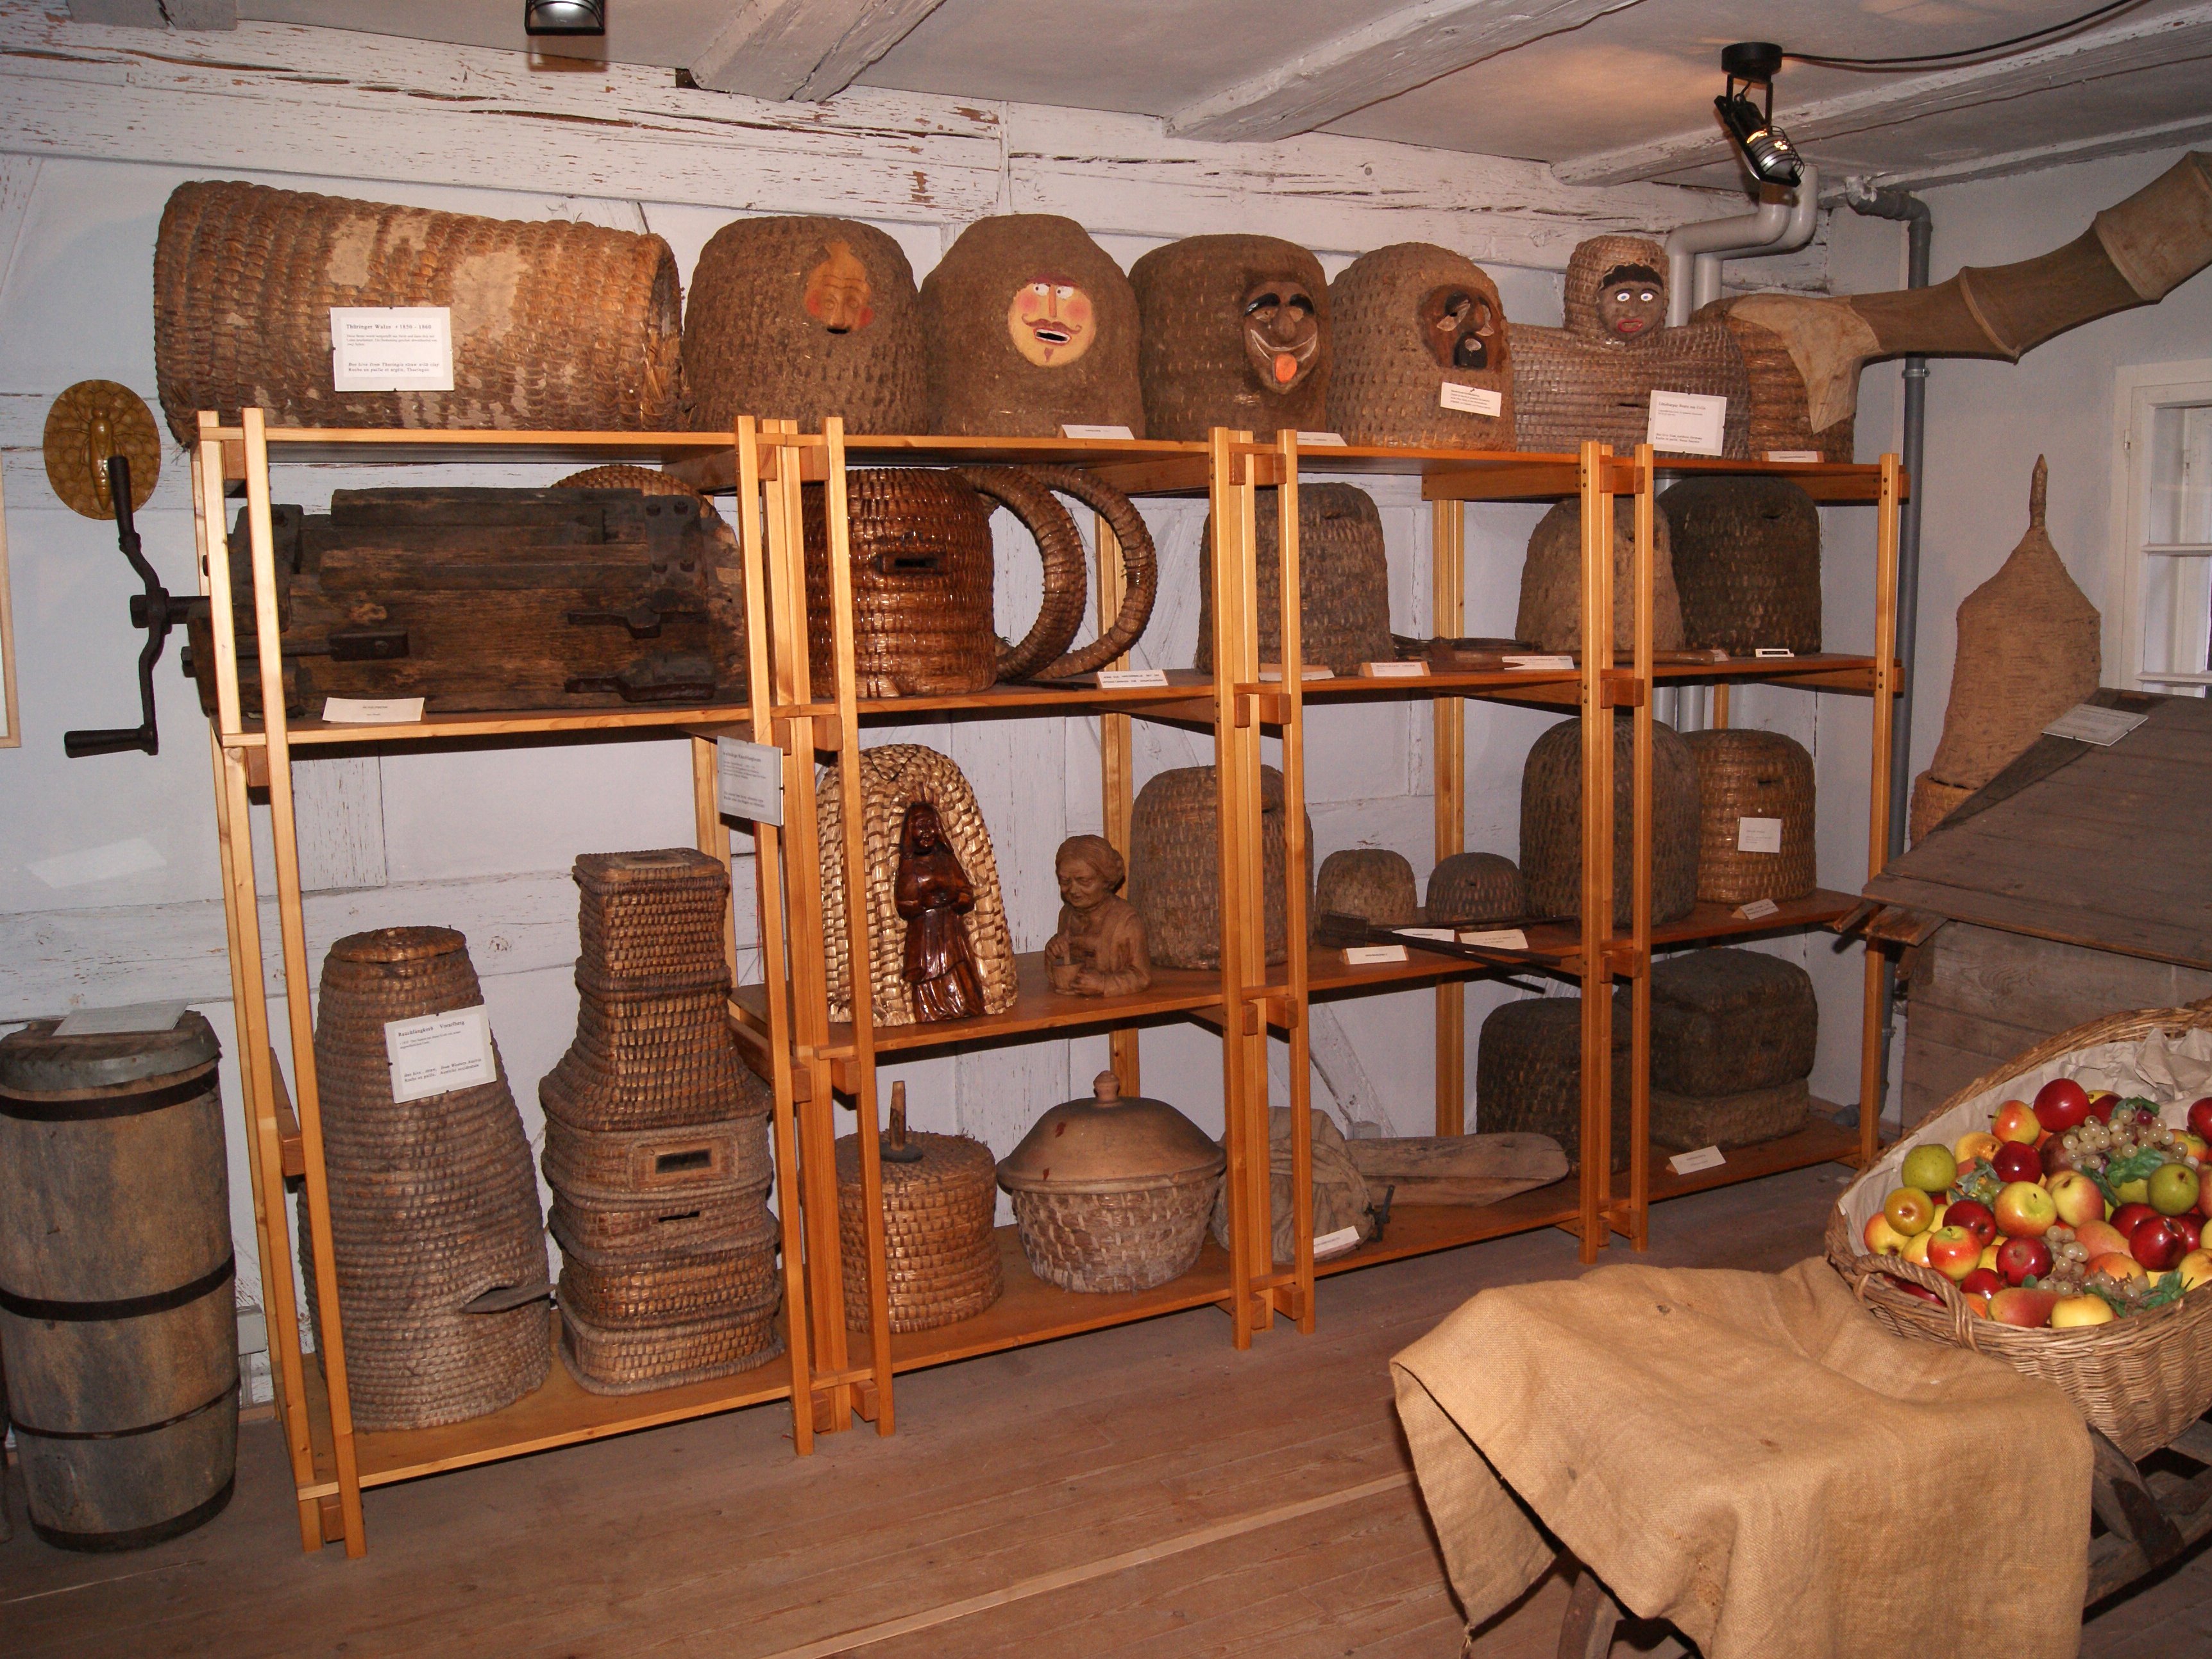 Η εικόνα δείχνει διάφορες κυψέλες στο Μουσείο Μελισσοκομίας